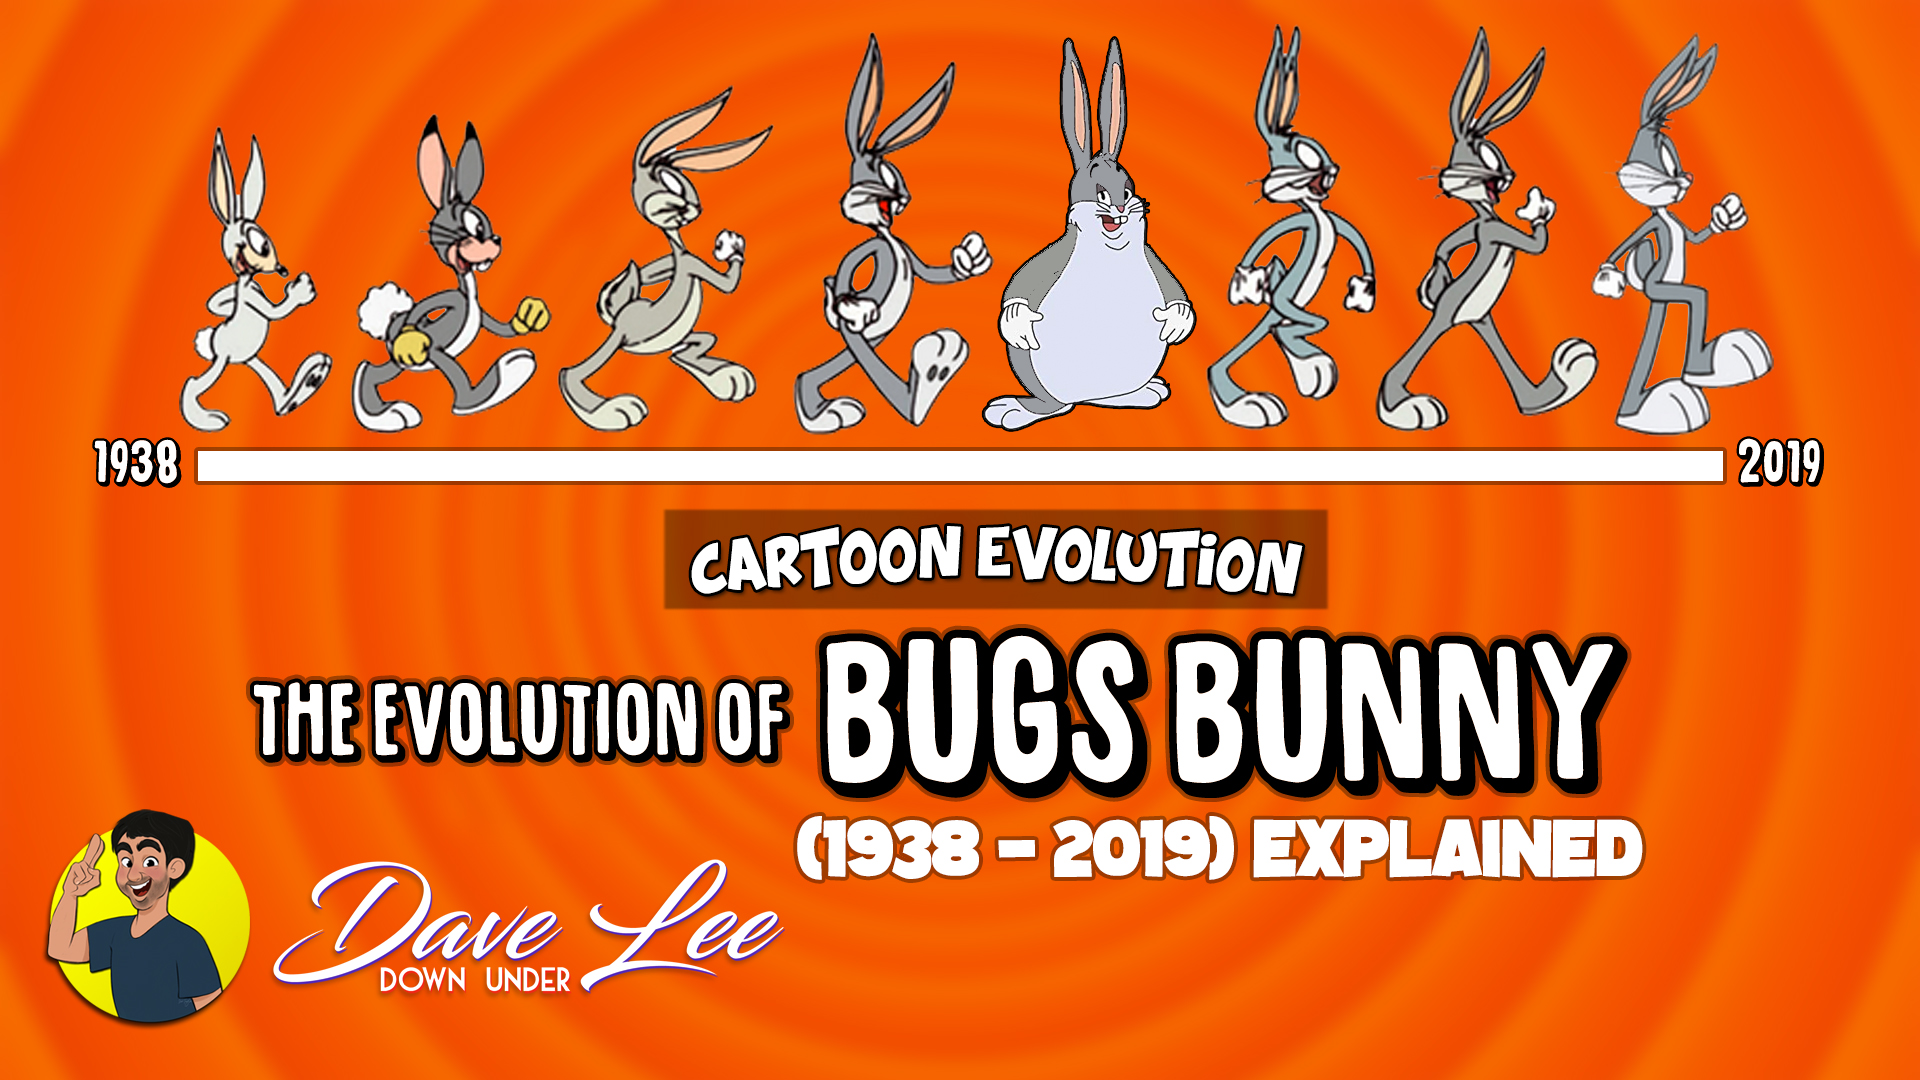 Dave Lee Down Under's Cartoon Evolution